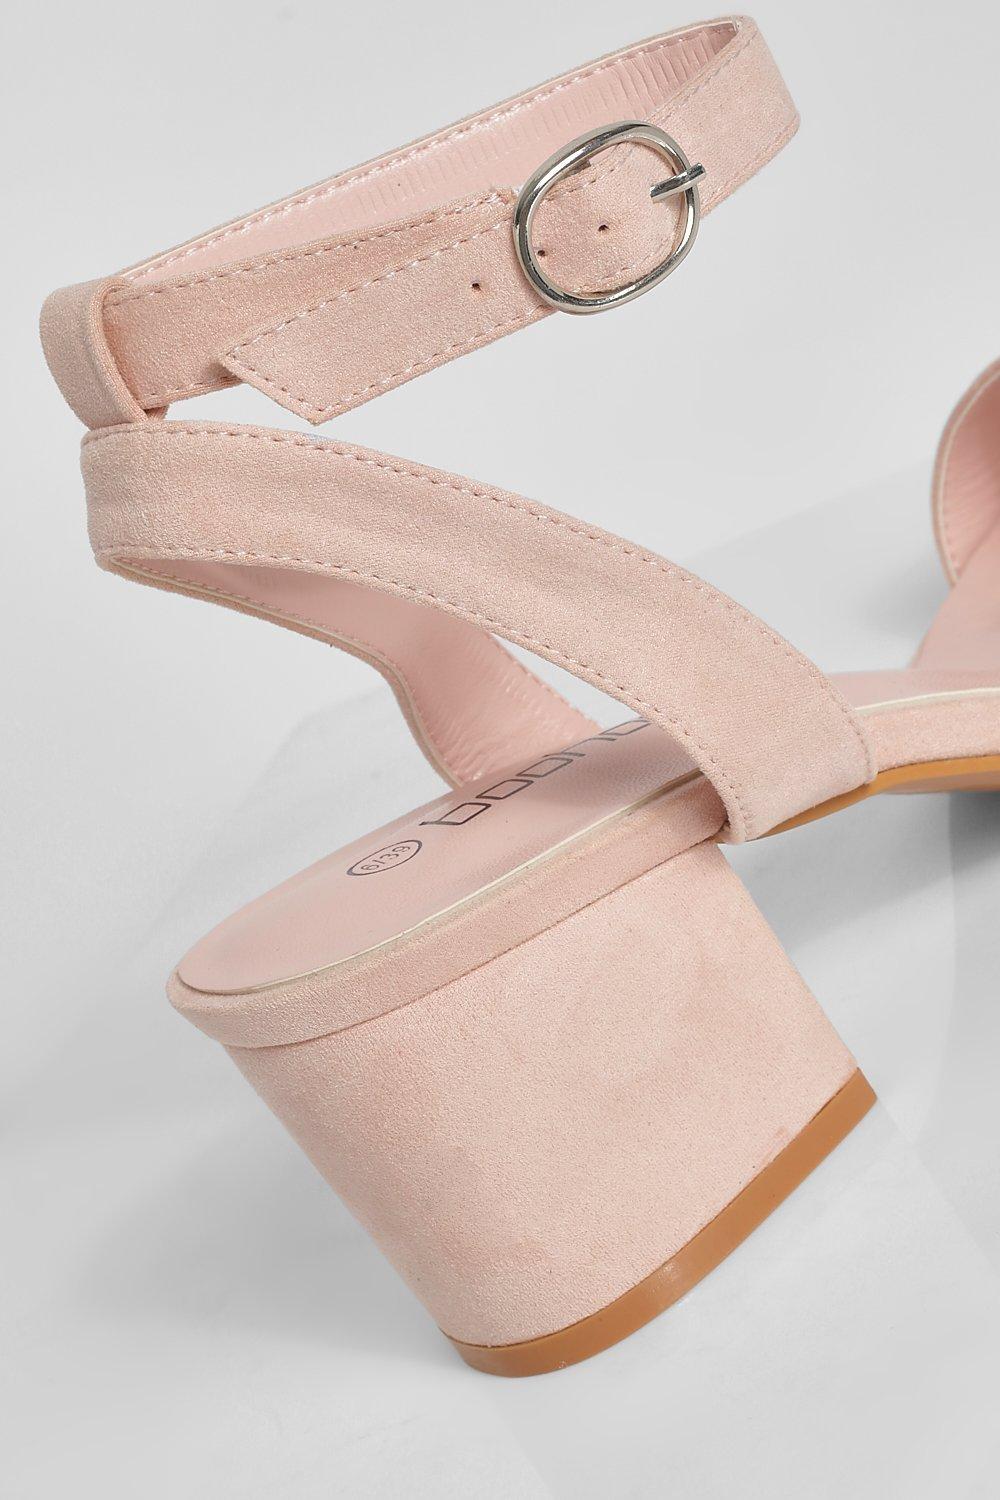 Pink Womens Shoes Heels Sandal heels Boohoo 2 Part Low Block Heel in Blush 